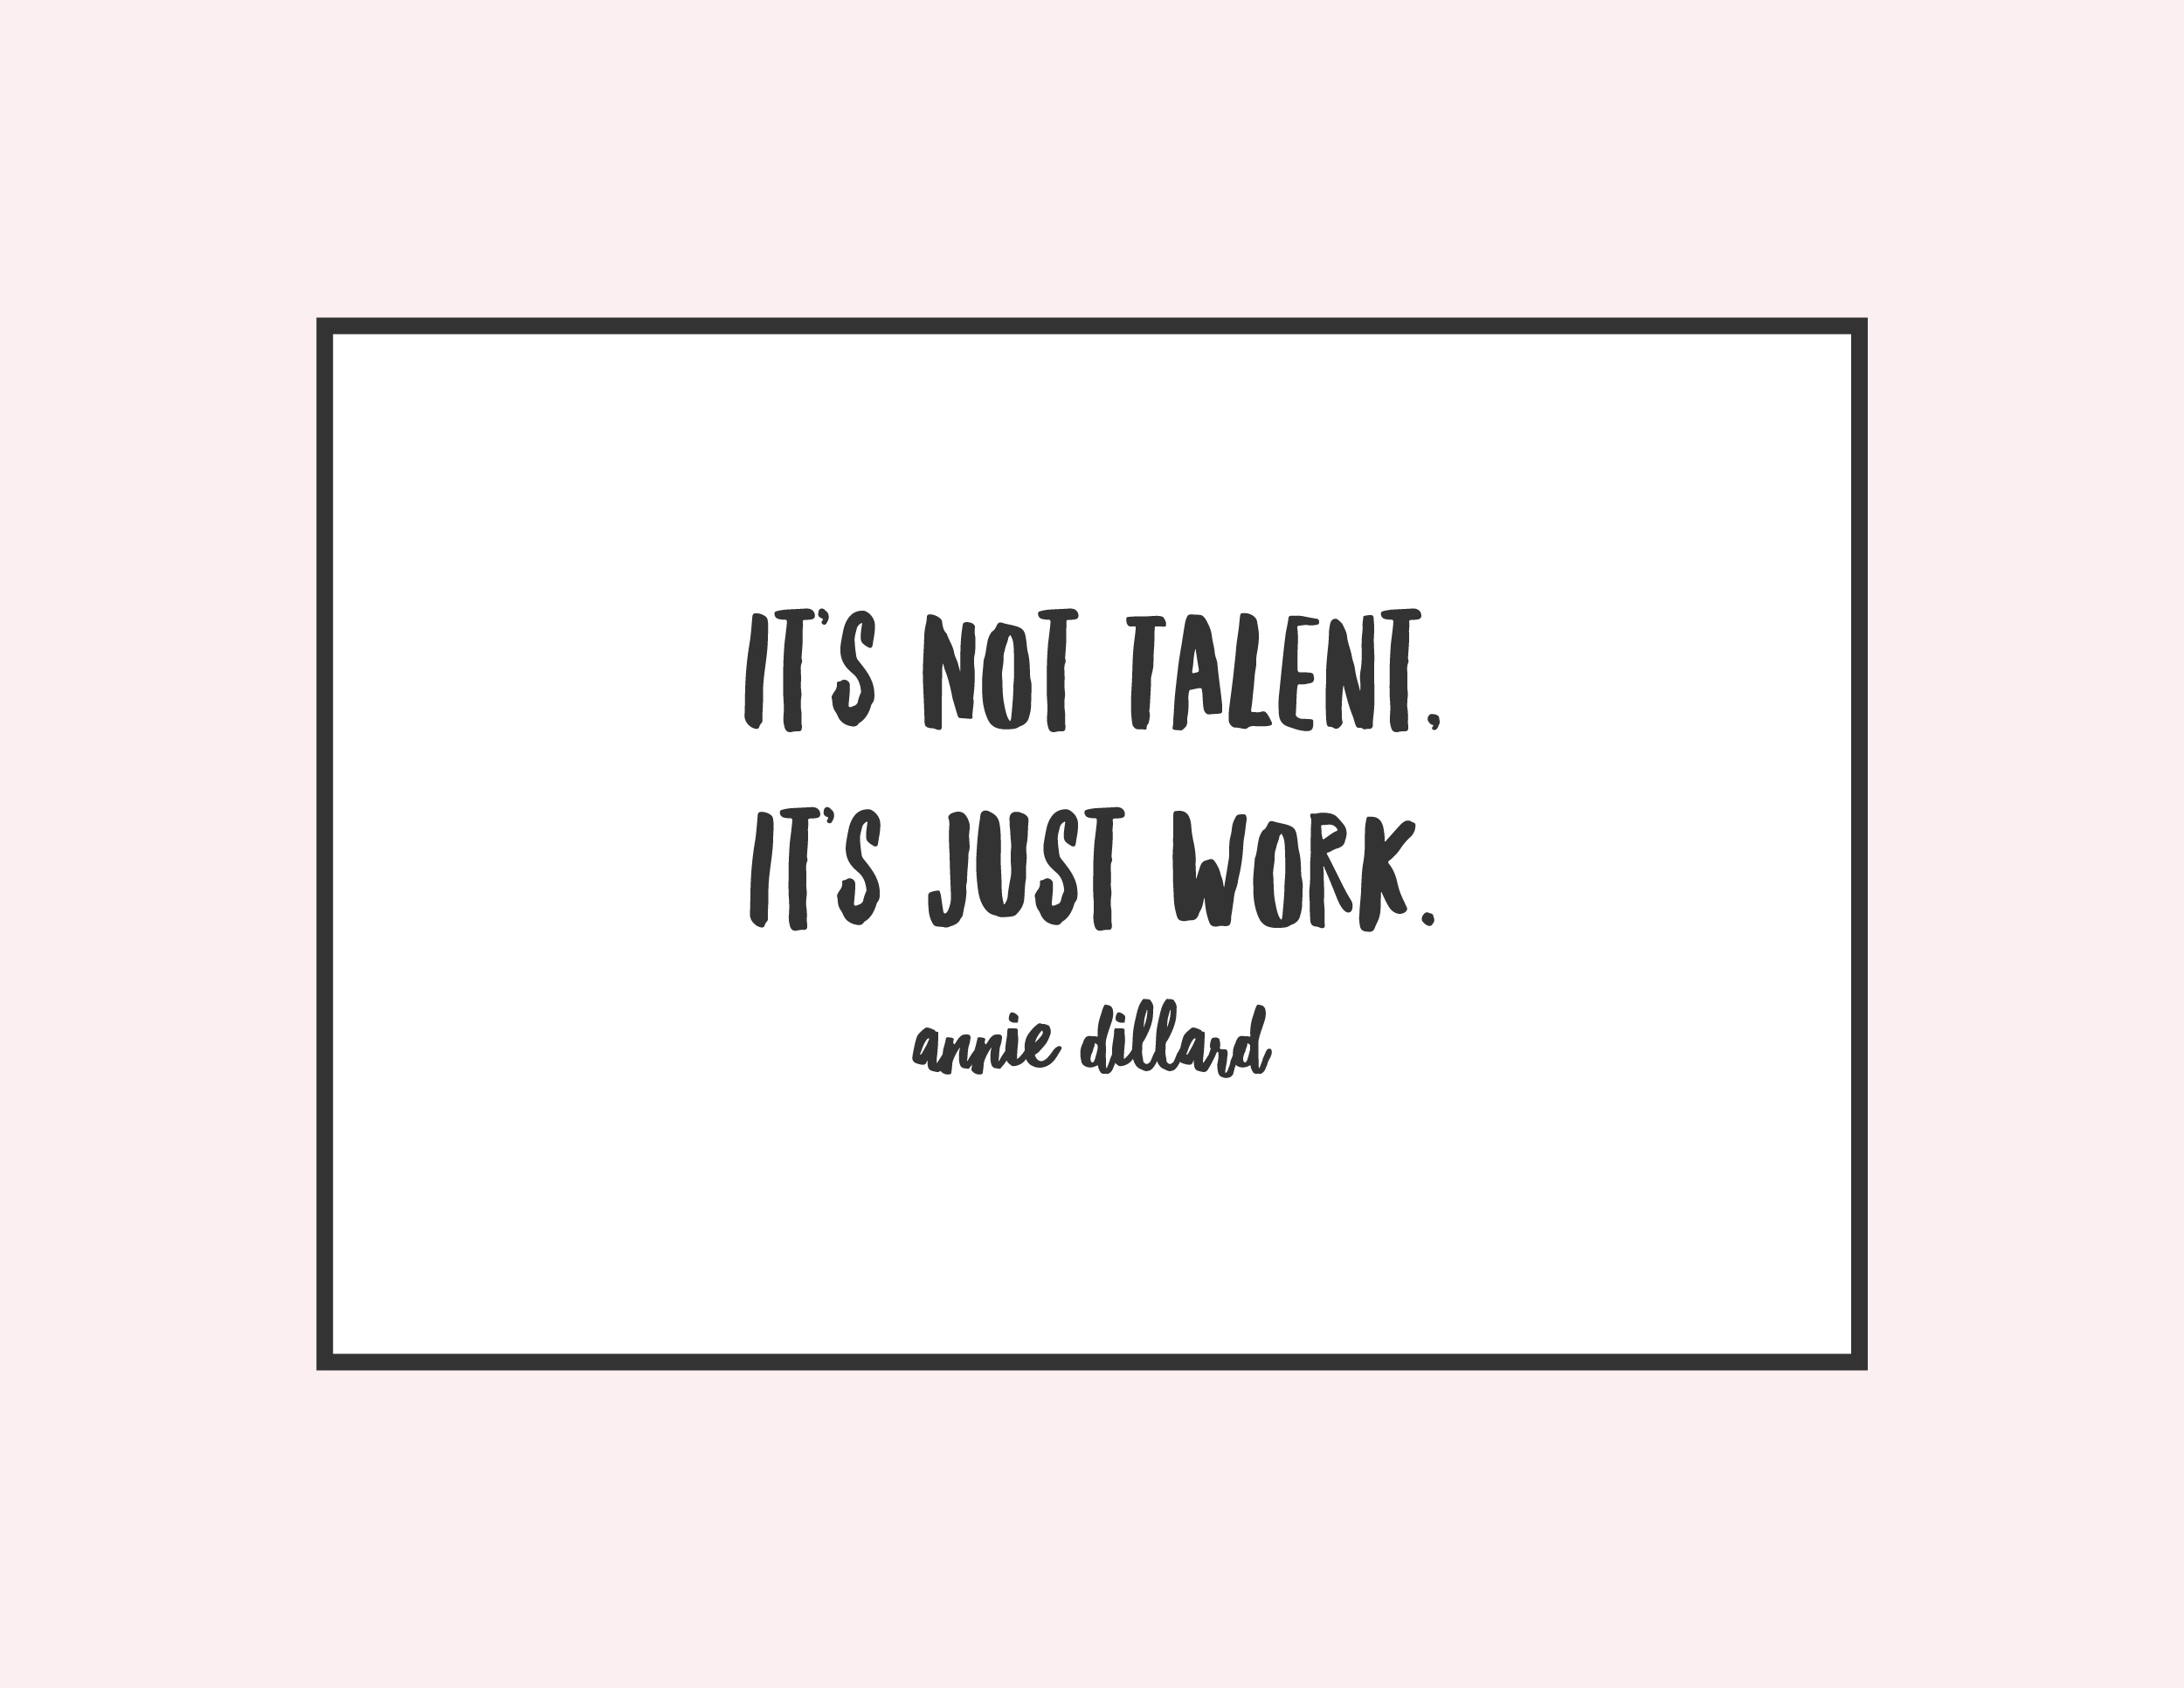 "It's not talent, it's just work" Annie Dillard, on work and talent